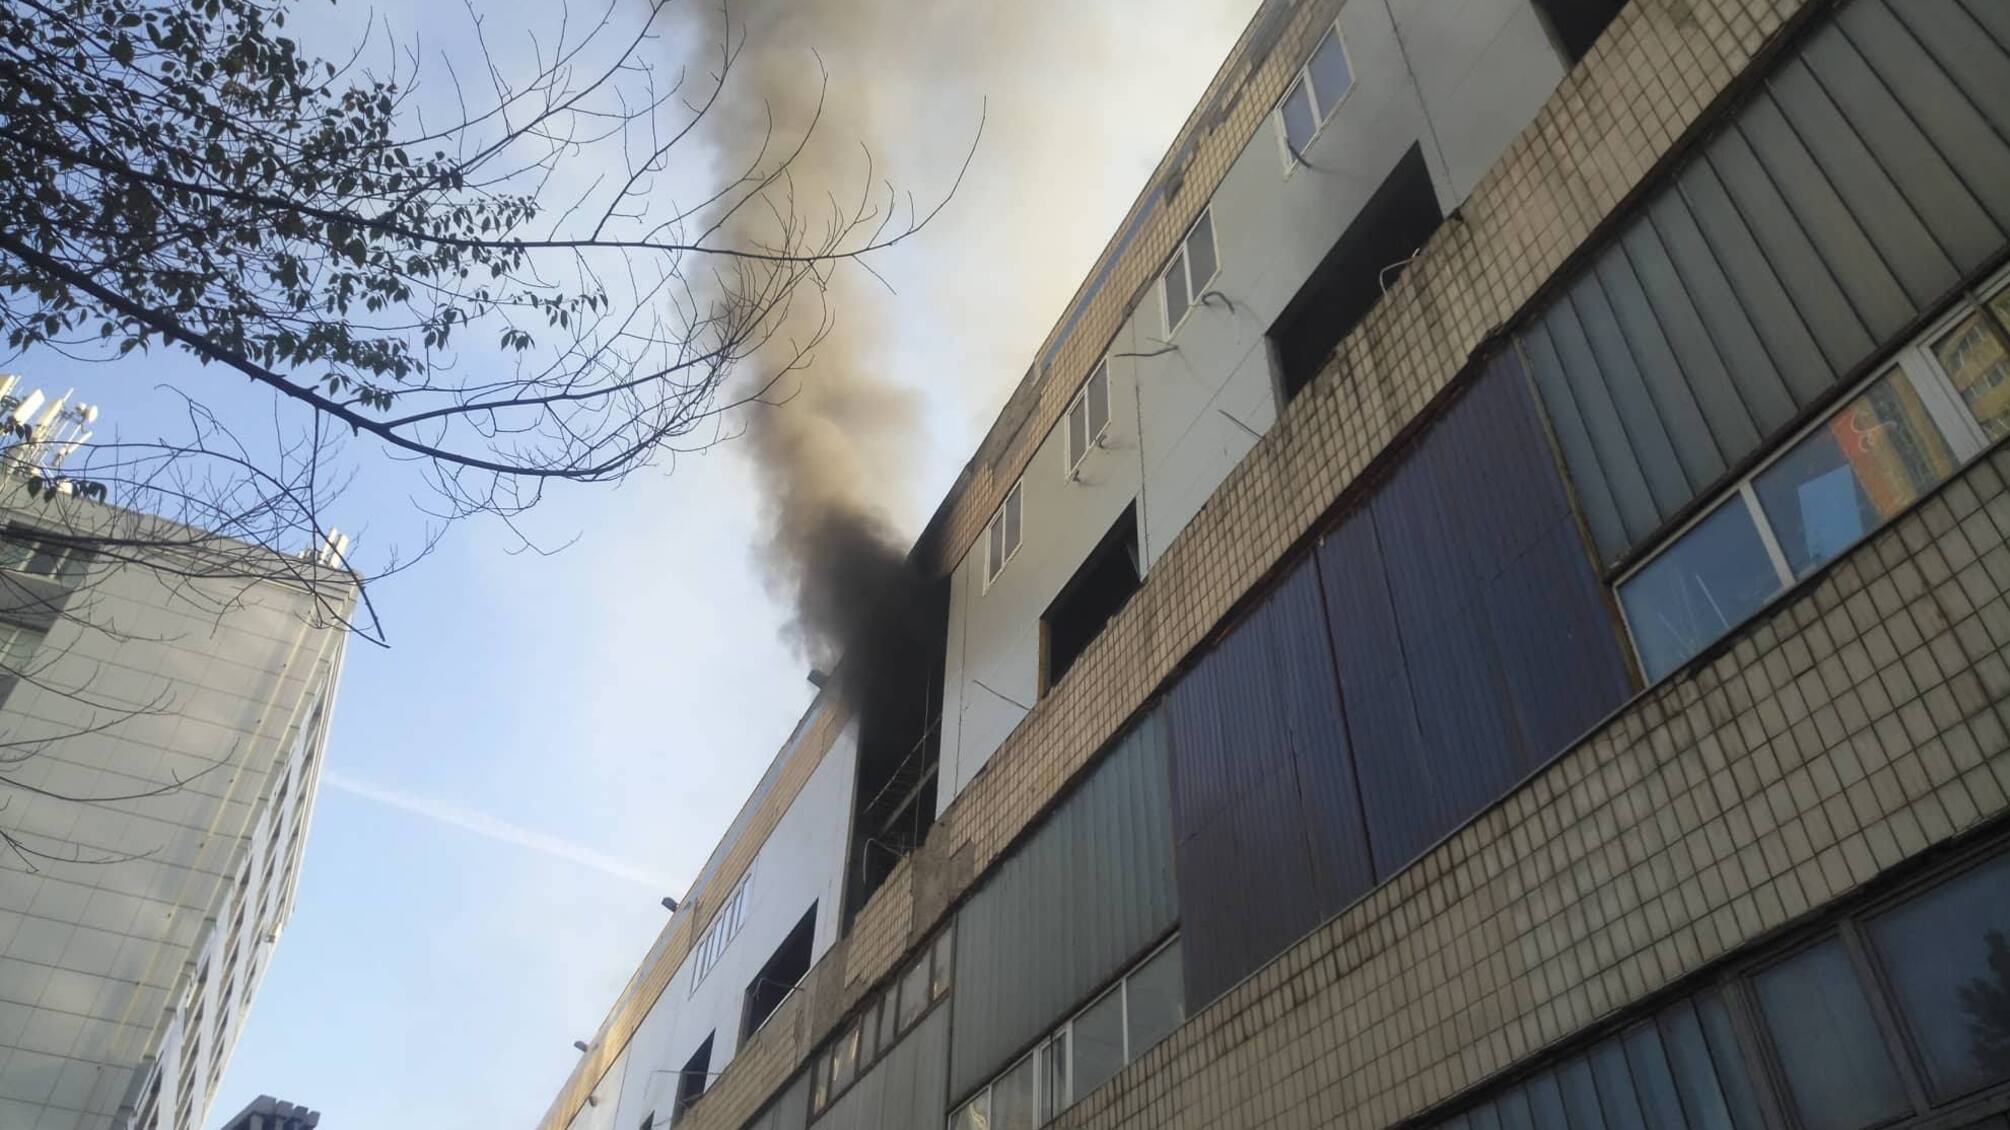 60 метрів промислової будівлі заводу “Транссигнал” горять у Києві. Є постраждалі (ФОТО)